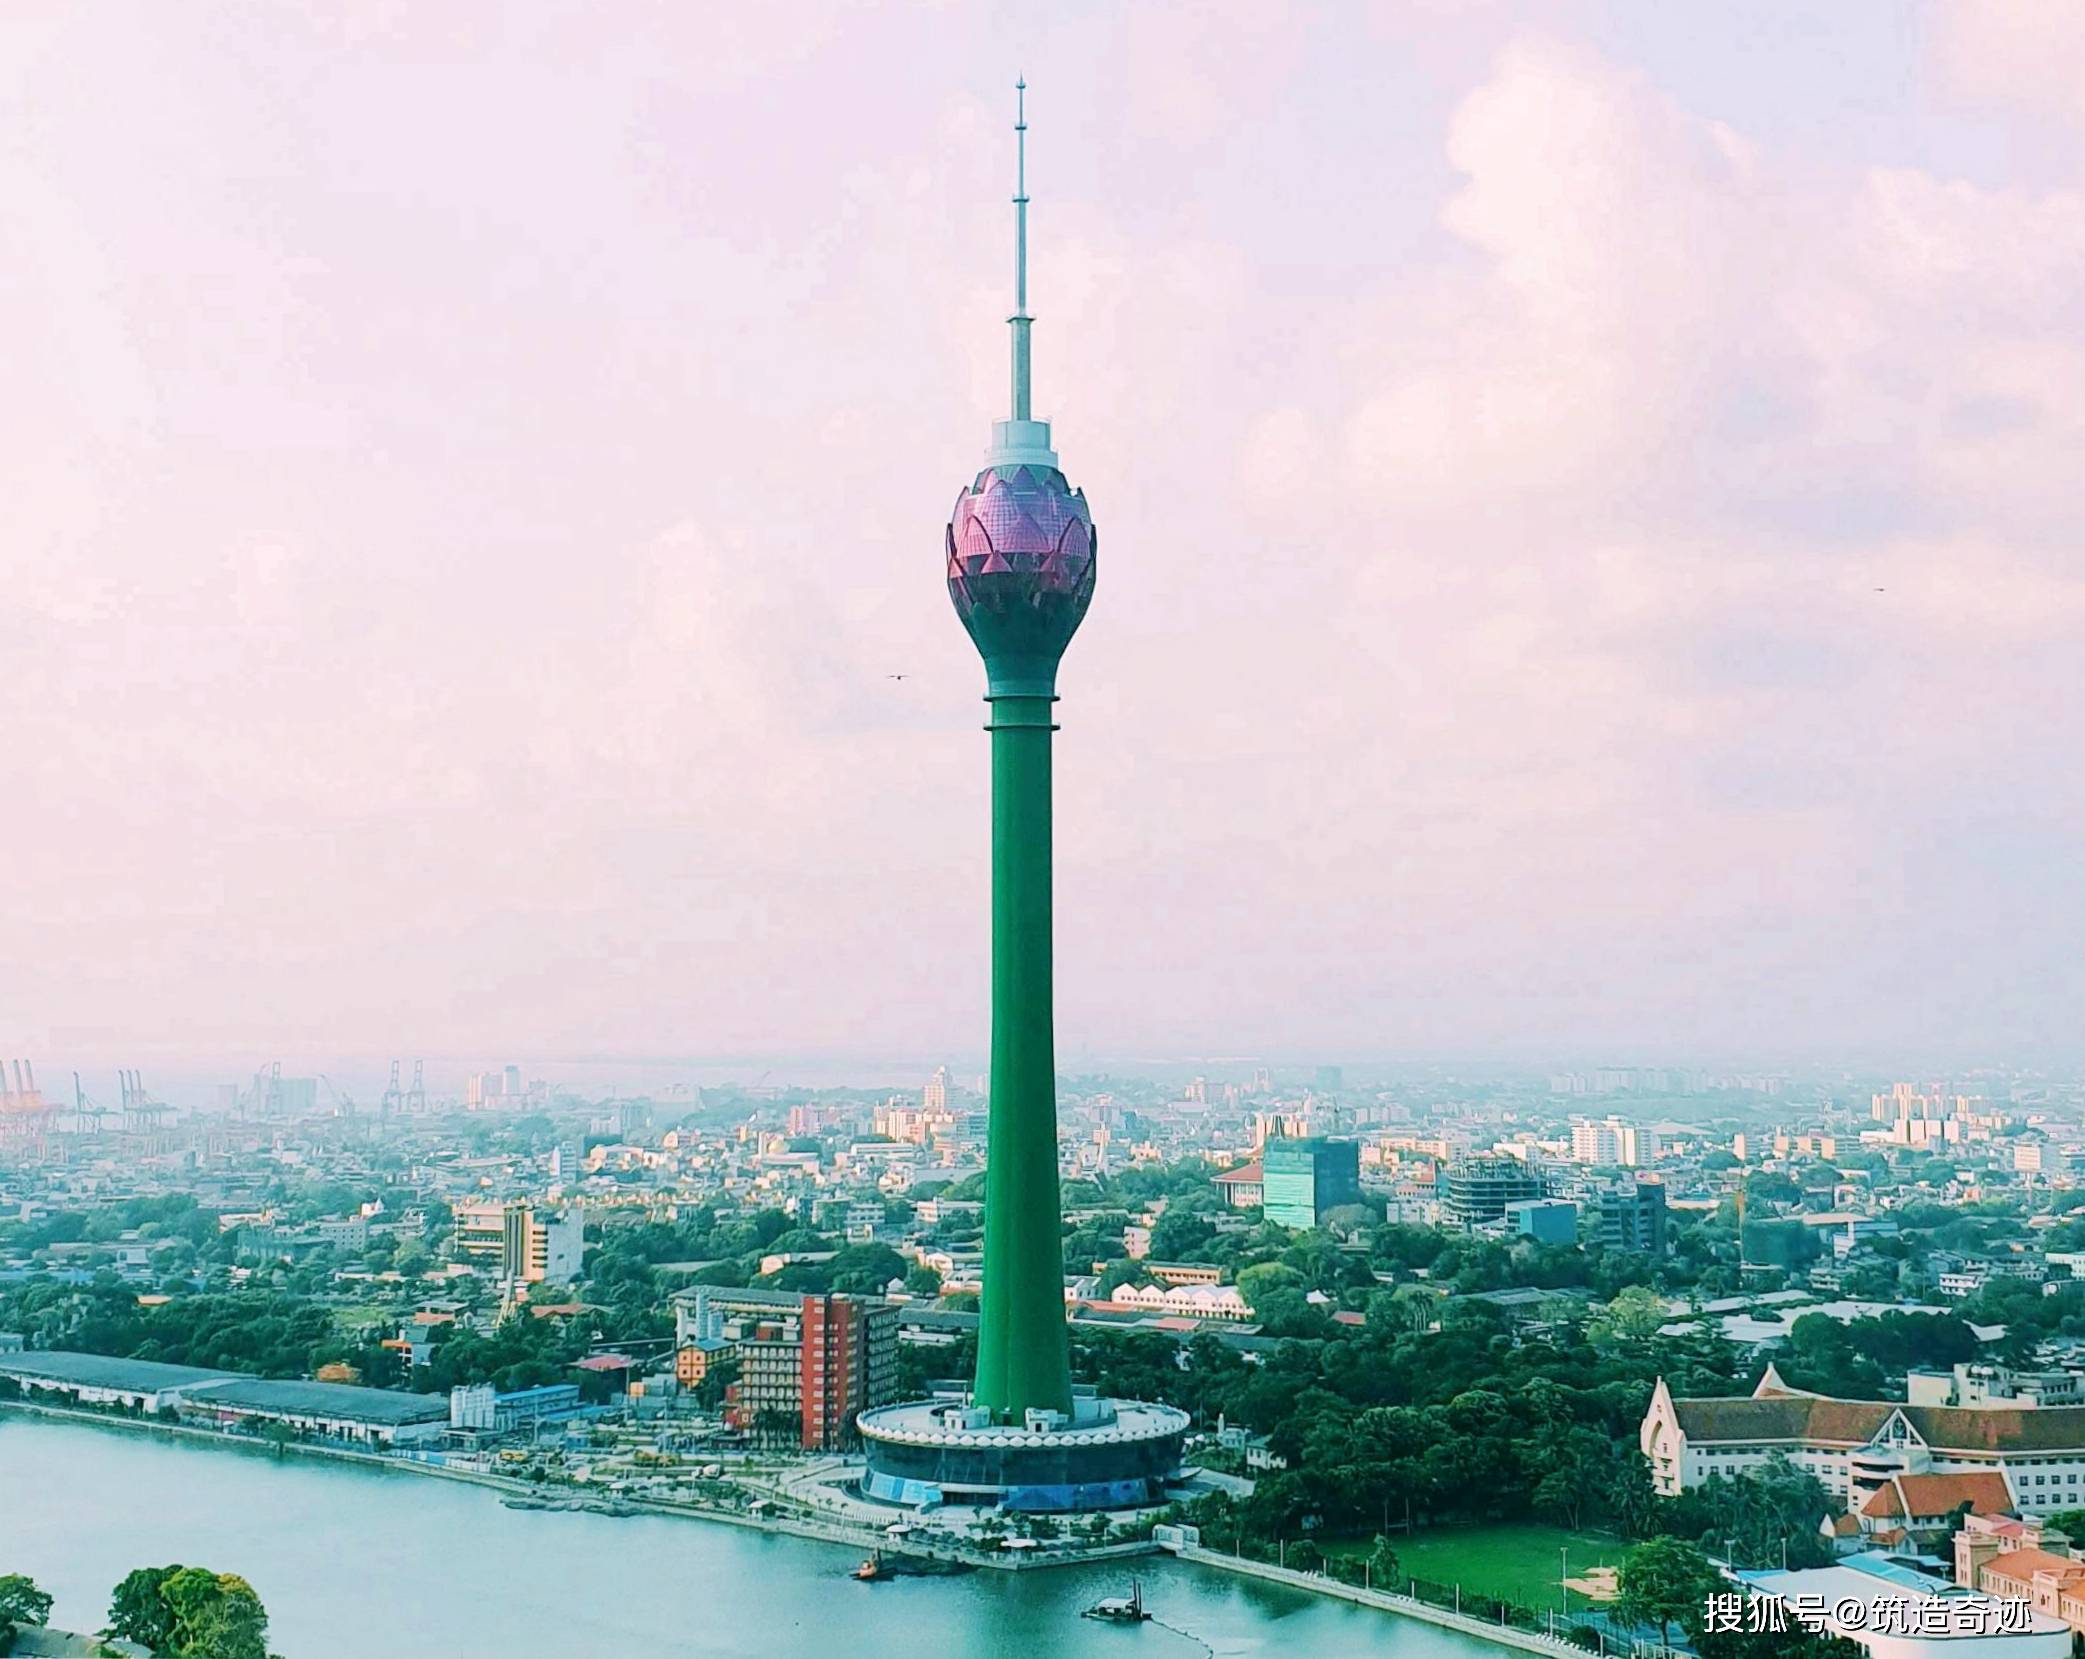 科伦坡电视塔，由我国承建，仿生造型+妖艳配色，是乡土还是前卫？